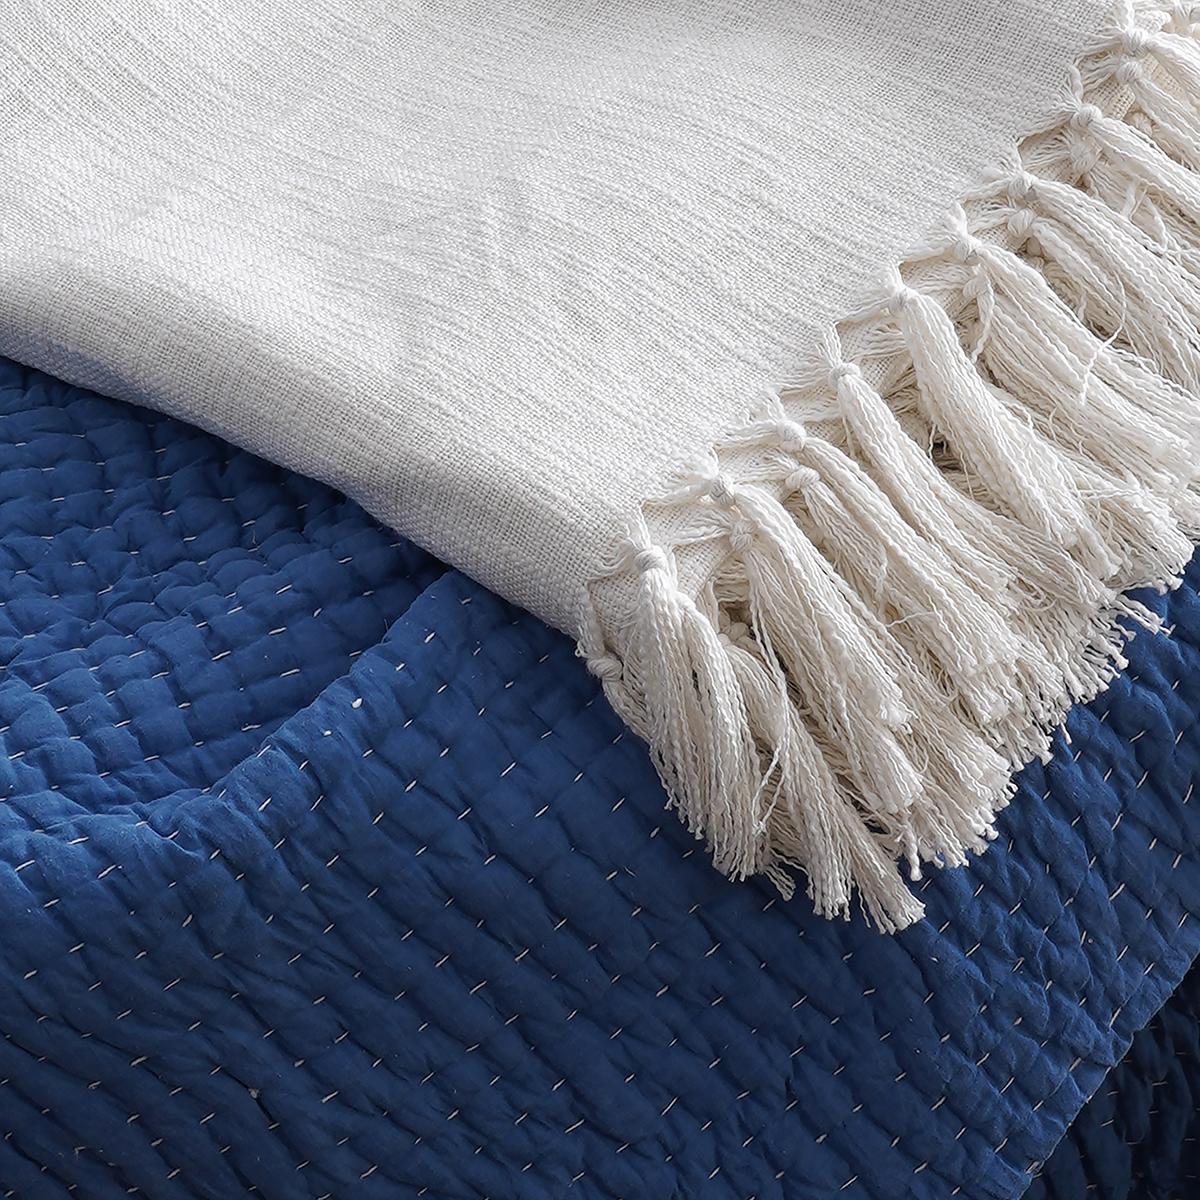 White Slub Cotton Throw blanket, 100% cotton, 50X60 inches with fringes